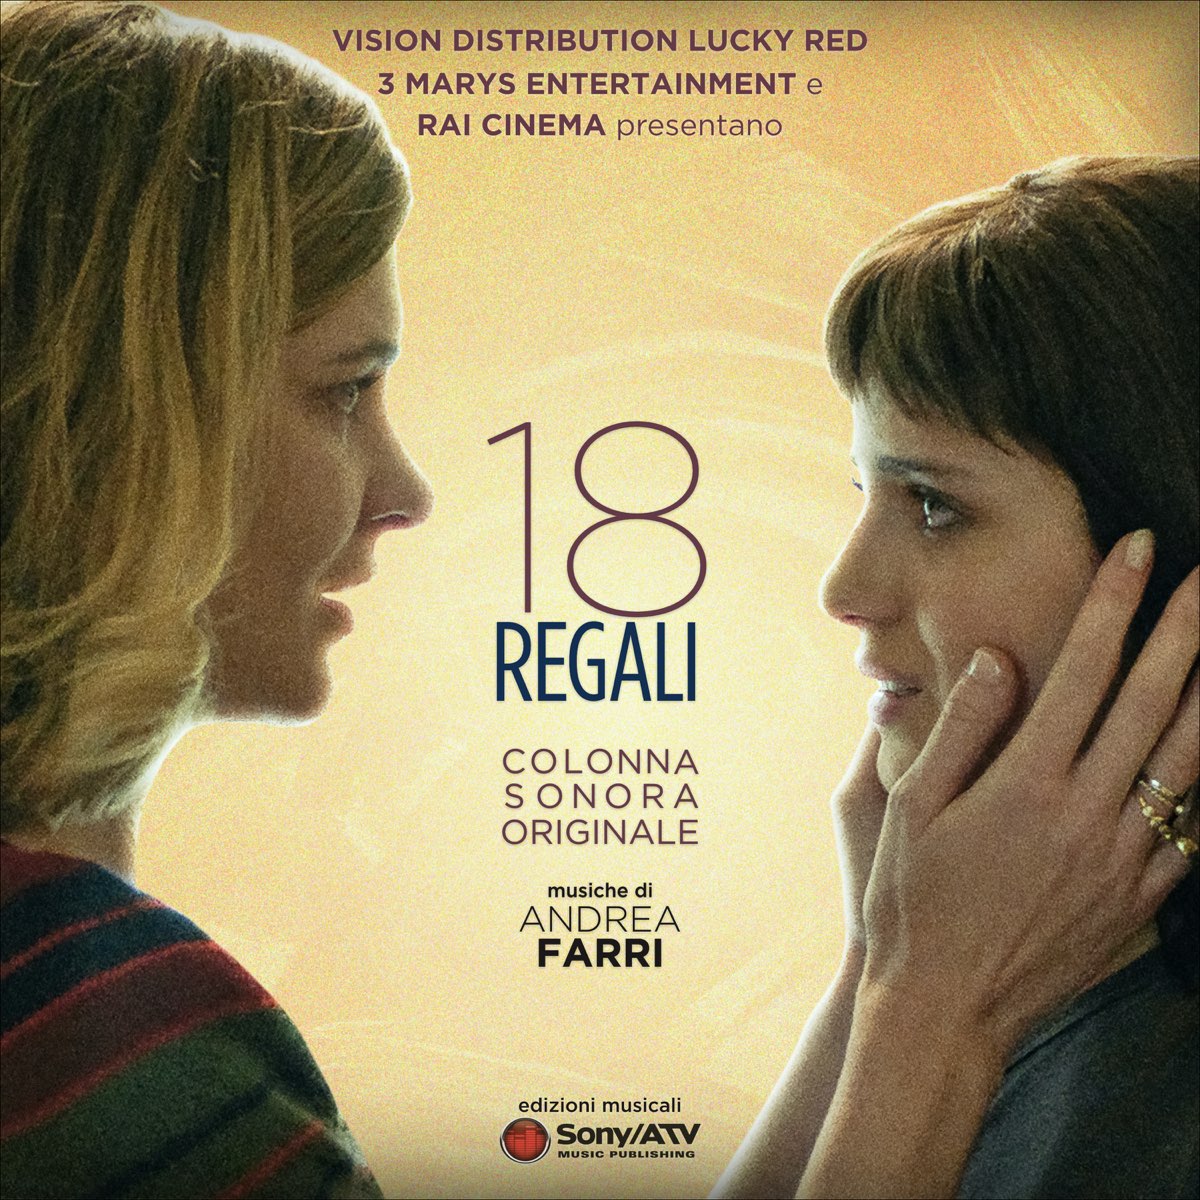 ‎18 Regali (Colonna sonora originale) by Andrea Farri on Apple Music